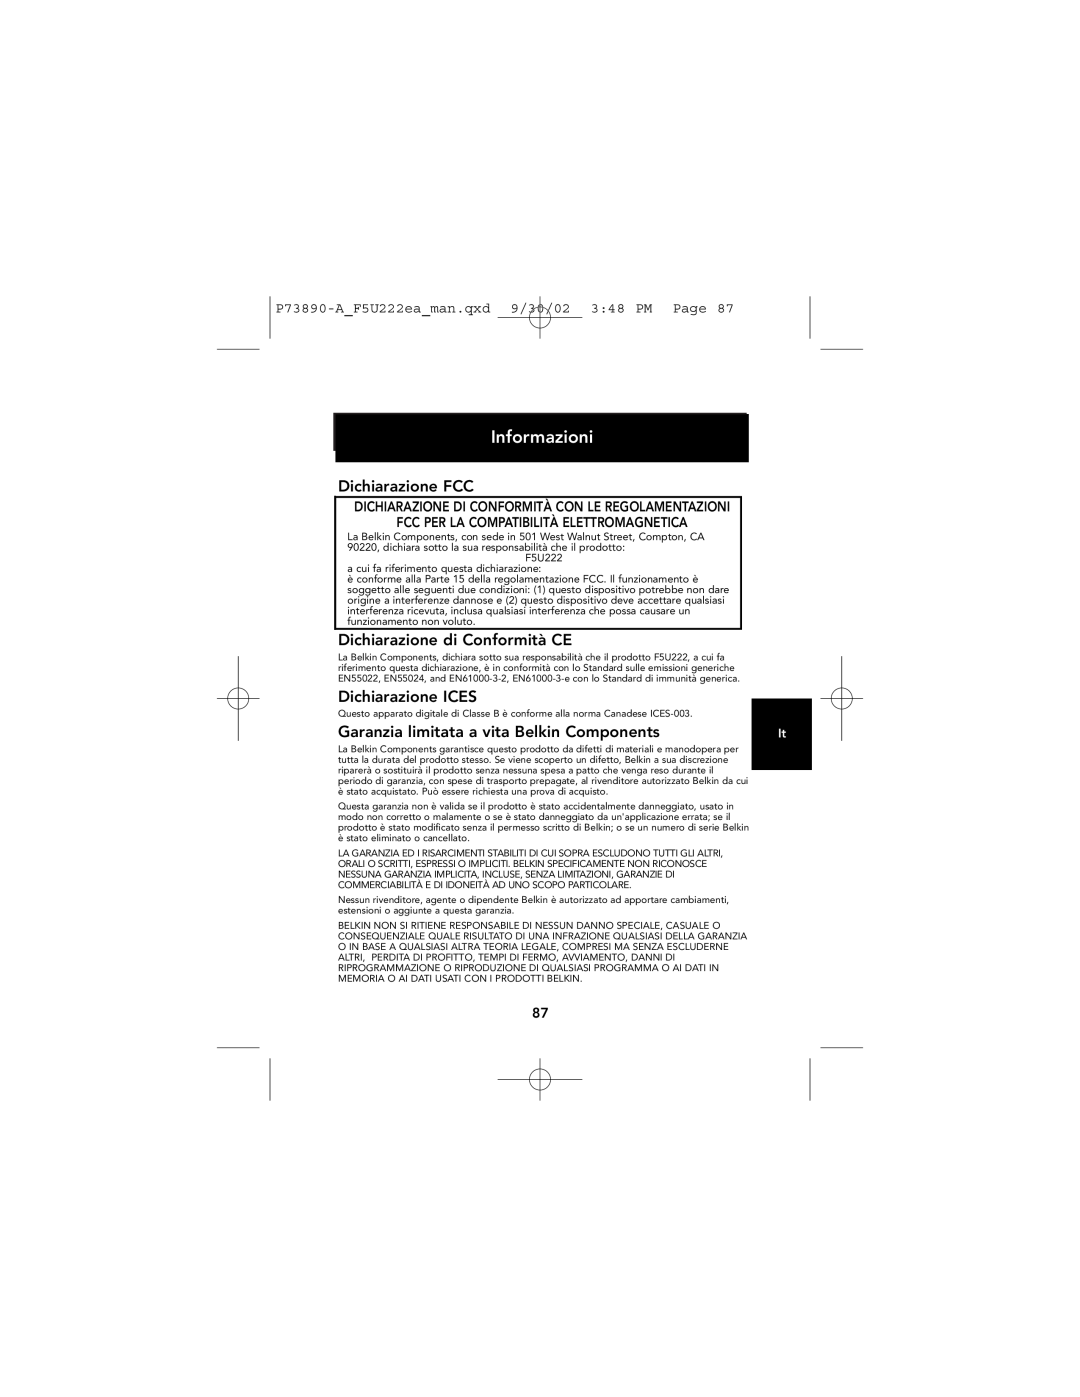 Belkin P73890EA-A manual Informazioni, Dichiarazione FCC, Dichiarazione di Conformità CE, Dichiarazione ICES 